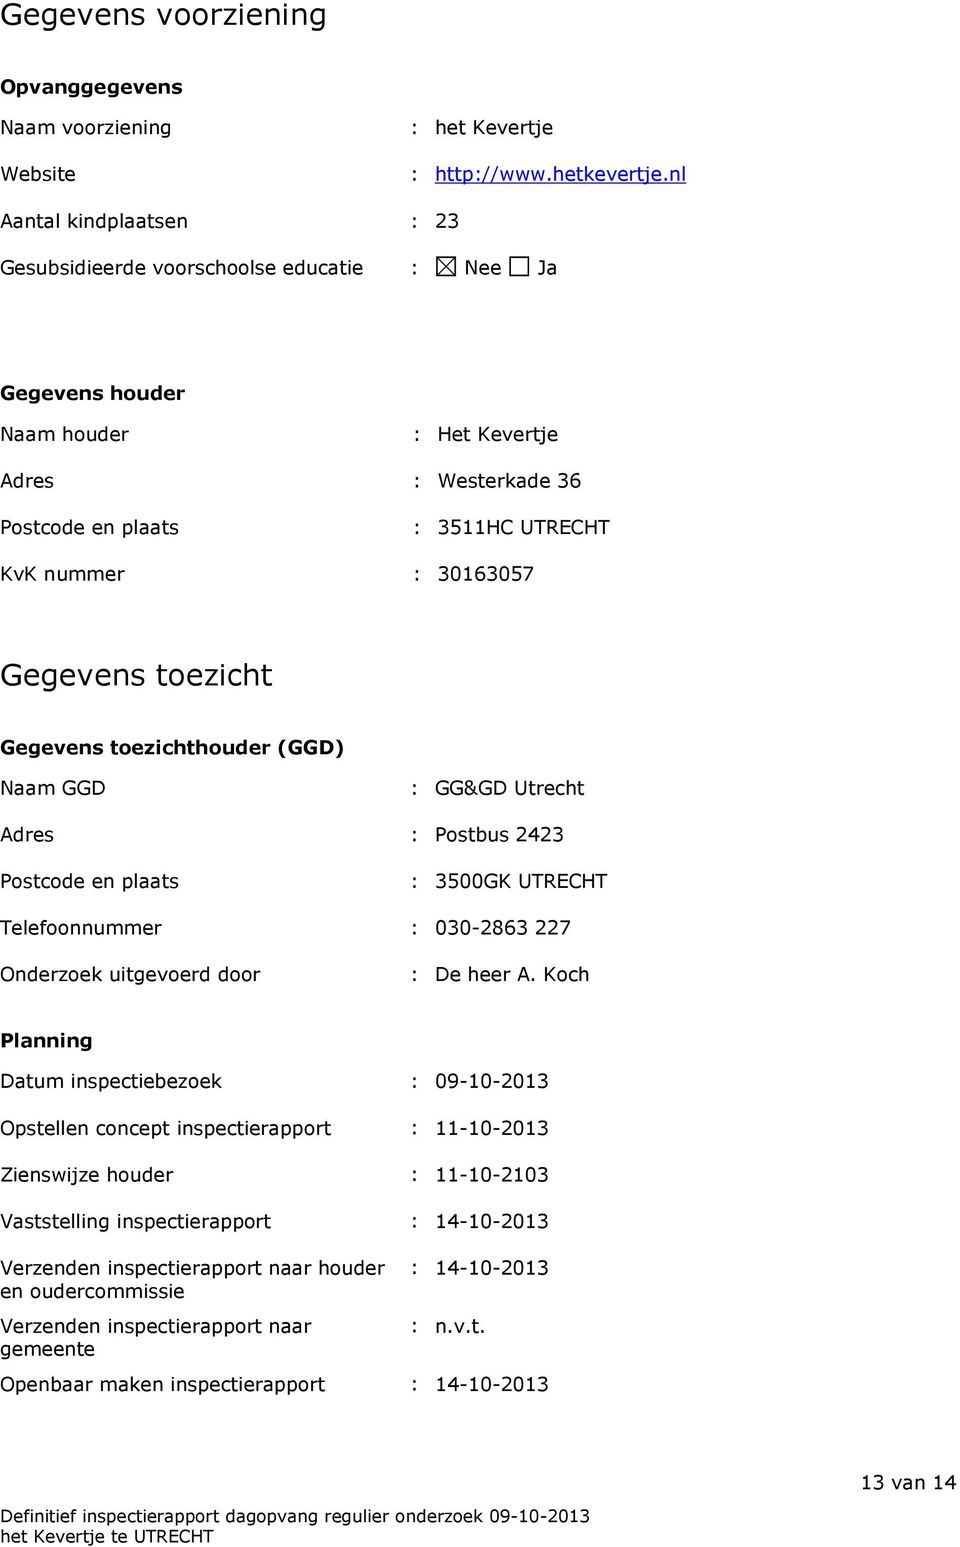 Gegevens toezicht Gegevens toezichthouder (GGD) Naam GGD : GG&GD Utrecht Adres : Postbus 2423 Postcode en plaats : 3500GK UTRECHT Telefoonnummer : 030-2863 227 Onderzoek uitgevoerd door : De heer A.